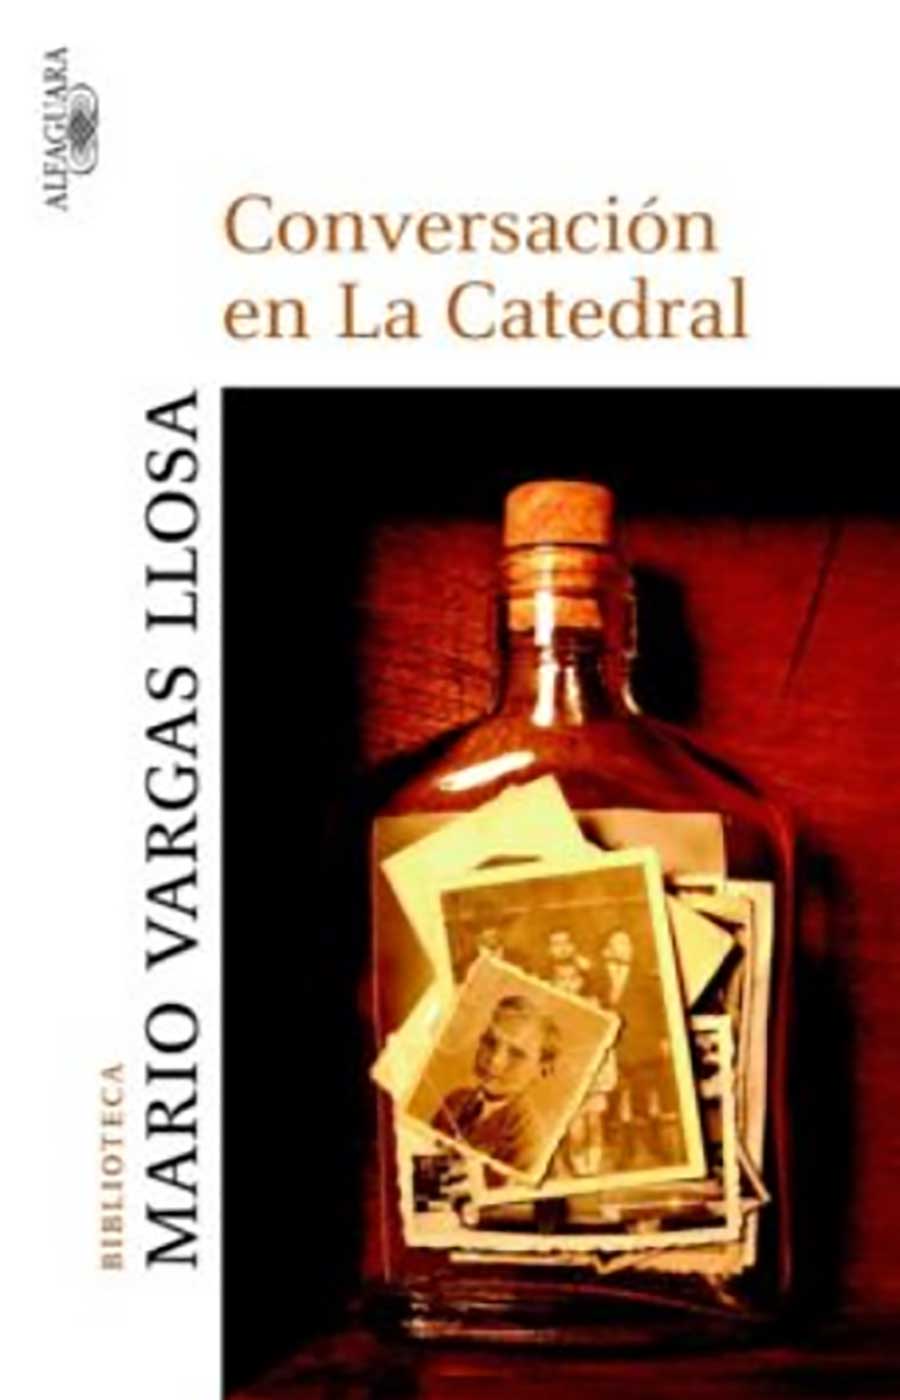 Portada del libro Conversación en la catedral, tercera novela del autor peruano Mario Vargas Llosa, Enlace de foto: https://portal.andina.pe/EDPFotografia3/thumbnail/2019/03/28/000574364M.jpg